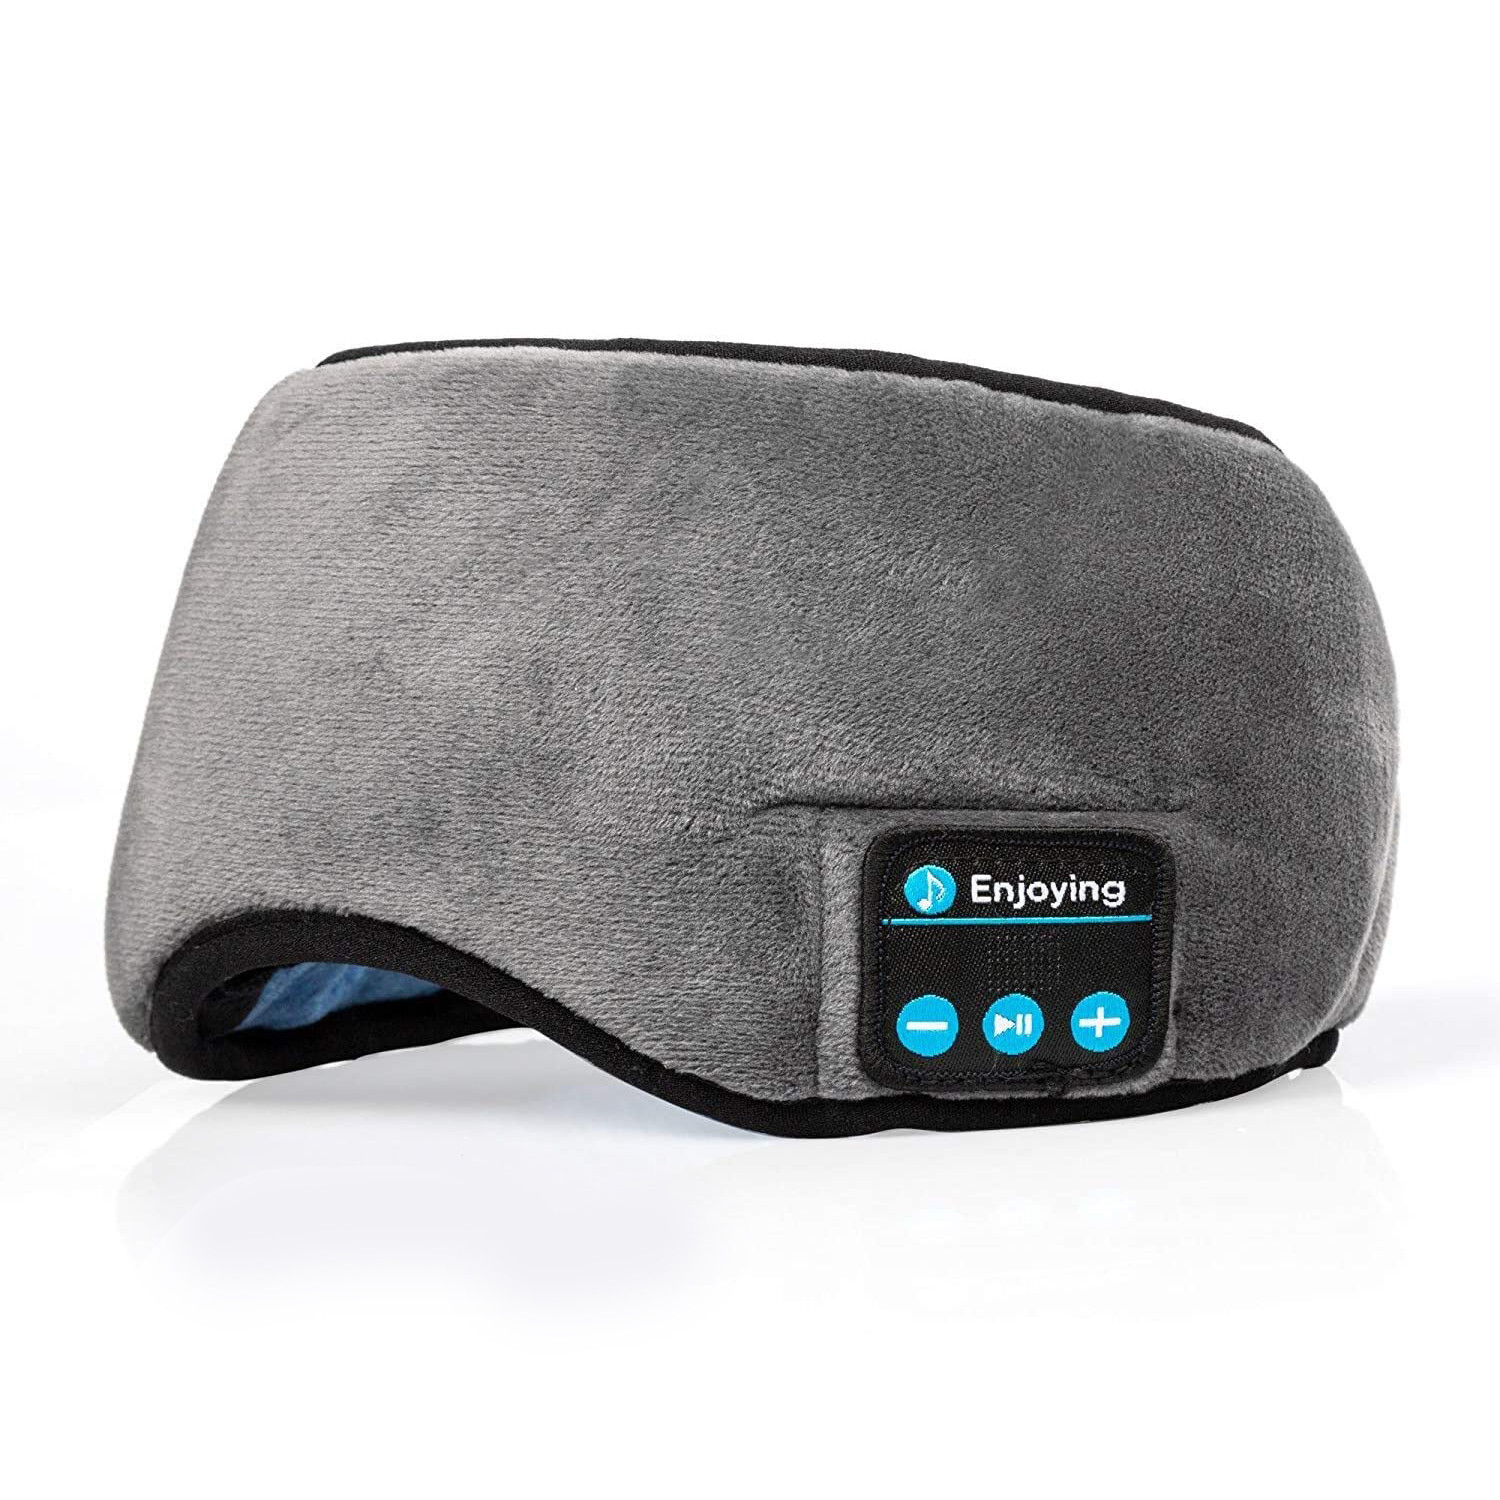 Mặt Nạ Bịt Mắt Ngủ Miếng Che Mắt Ngủ Tích Hợp Tai nghe Bluetooth Sleep Headphones and Eye Cover